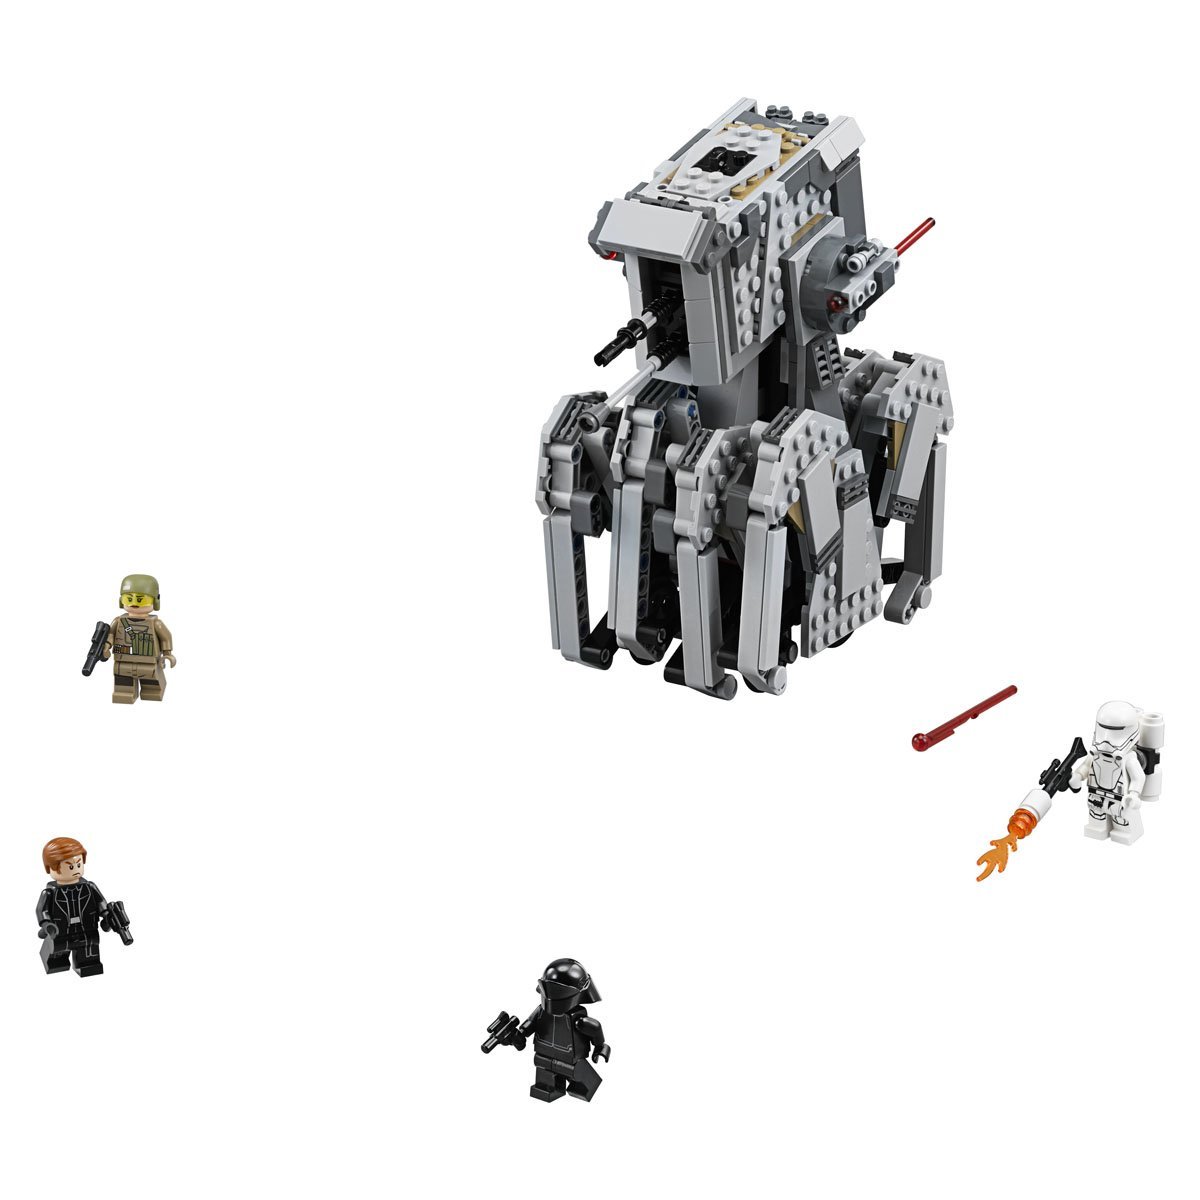 Star Wars - First Order Heavy Scout Walker Lego